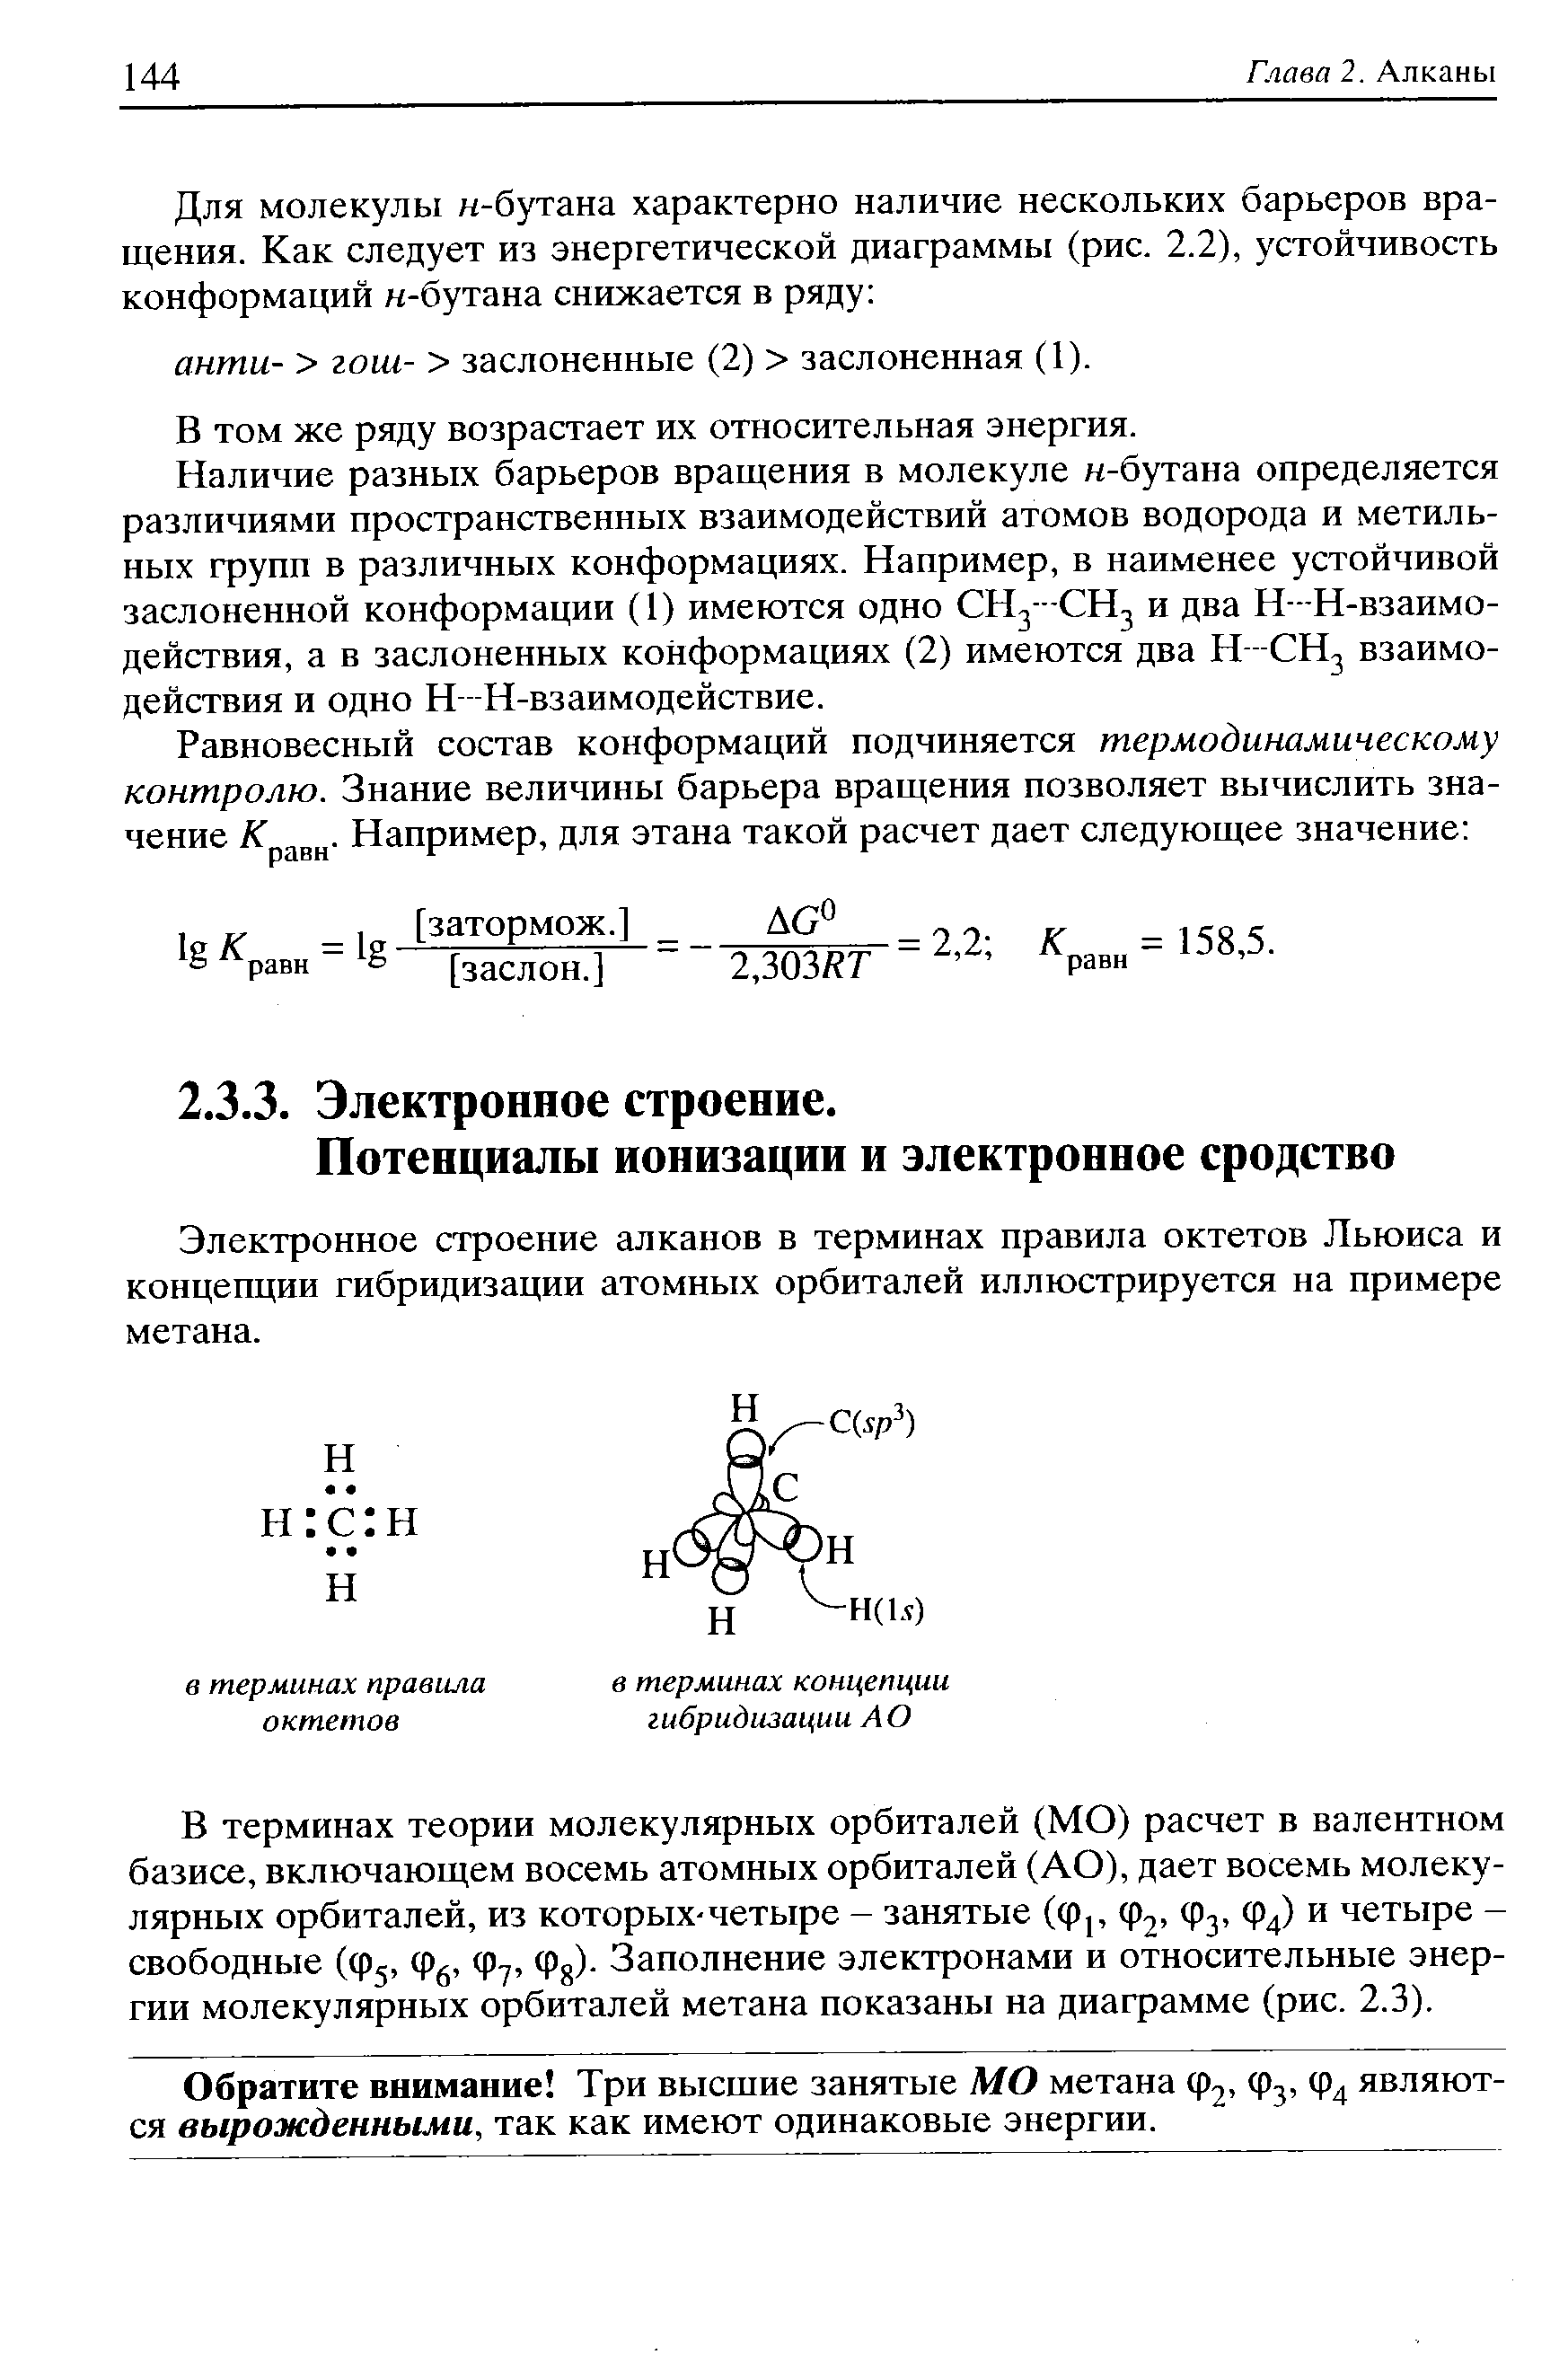 Электронное строение алканов в терминах правила октетов Льюиса и концепции гибридизации атомных орбиталей иллюстрируется на примере метана.